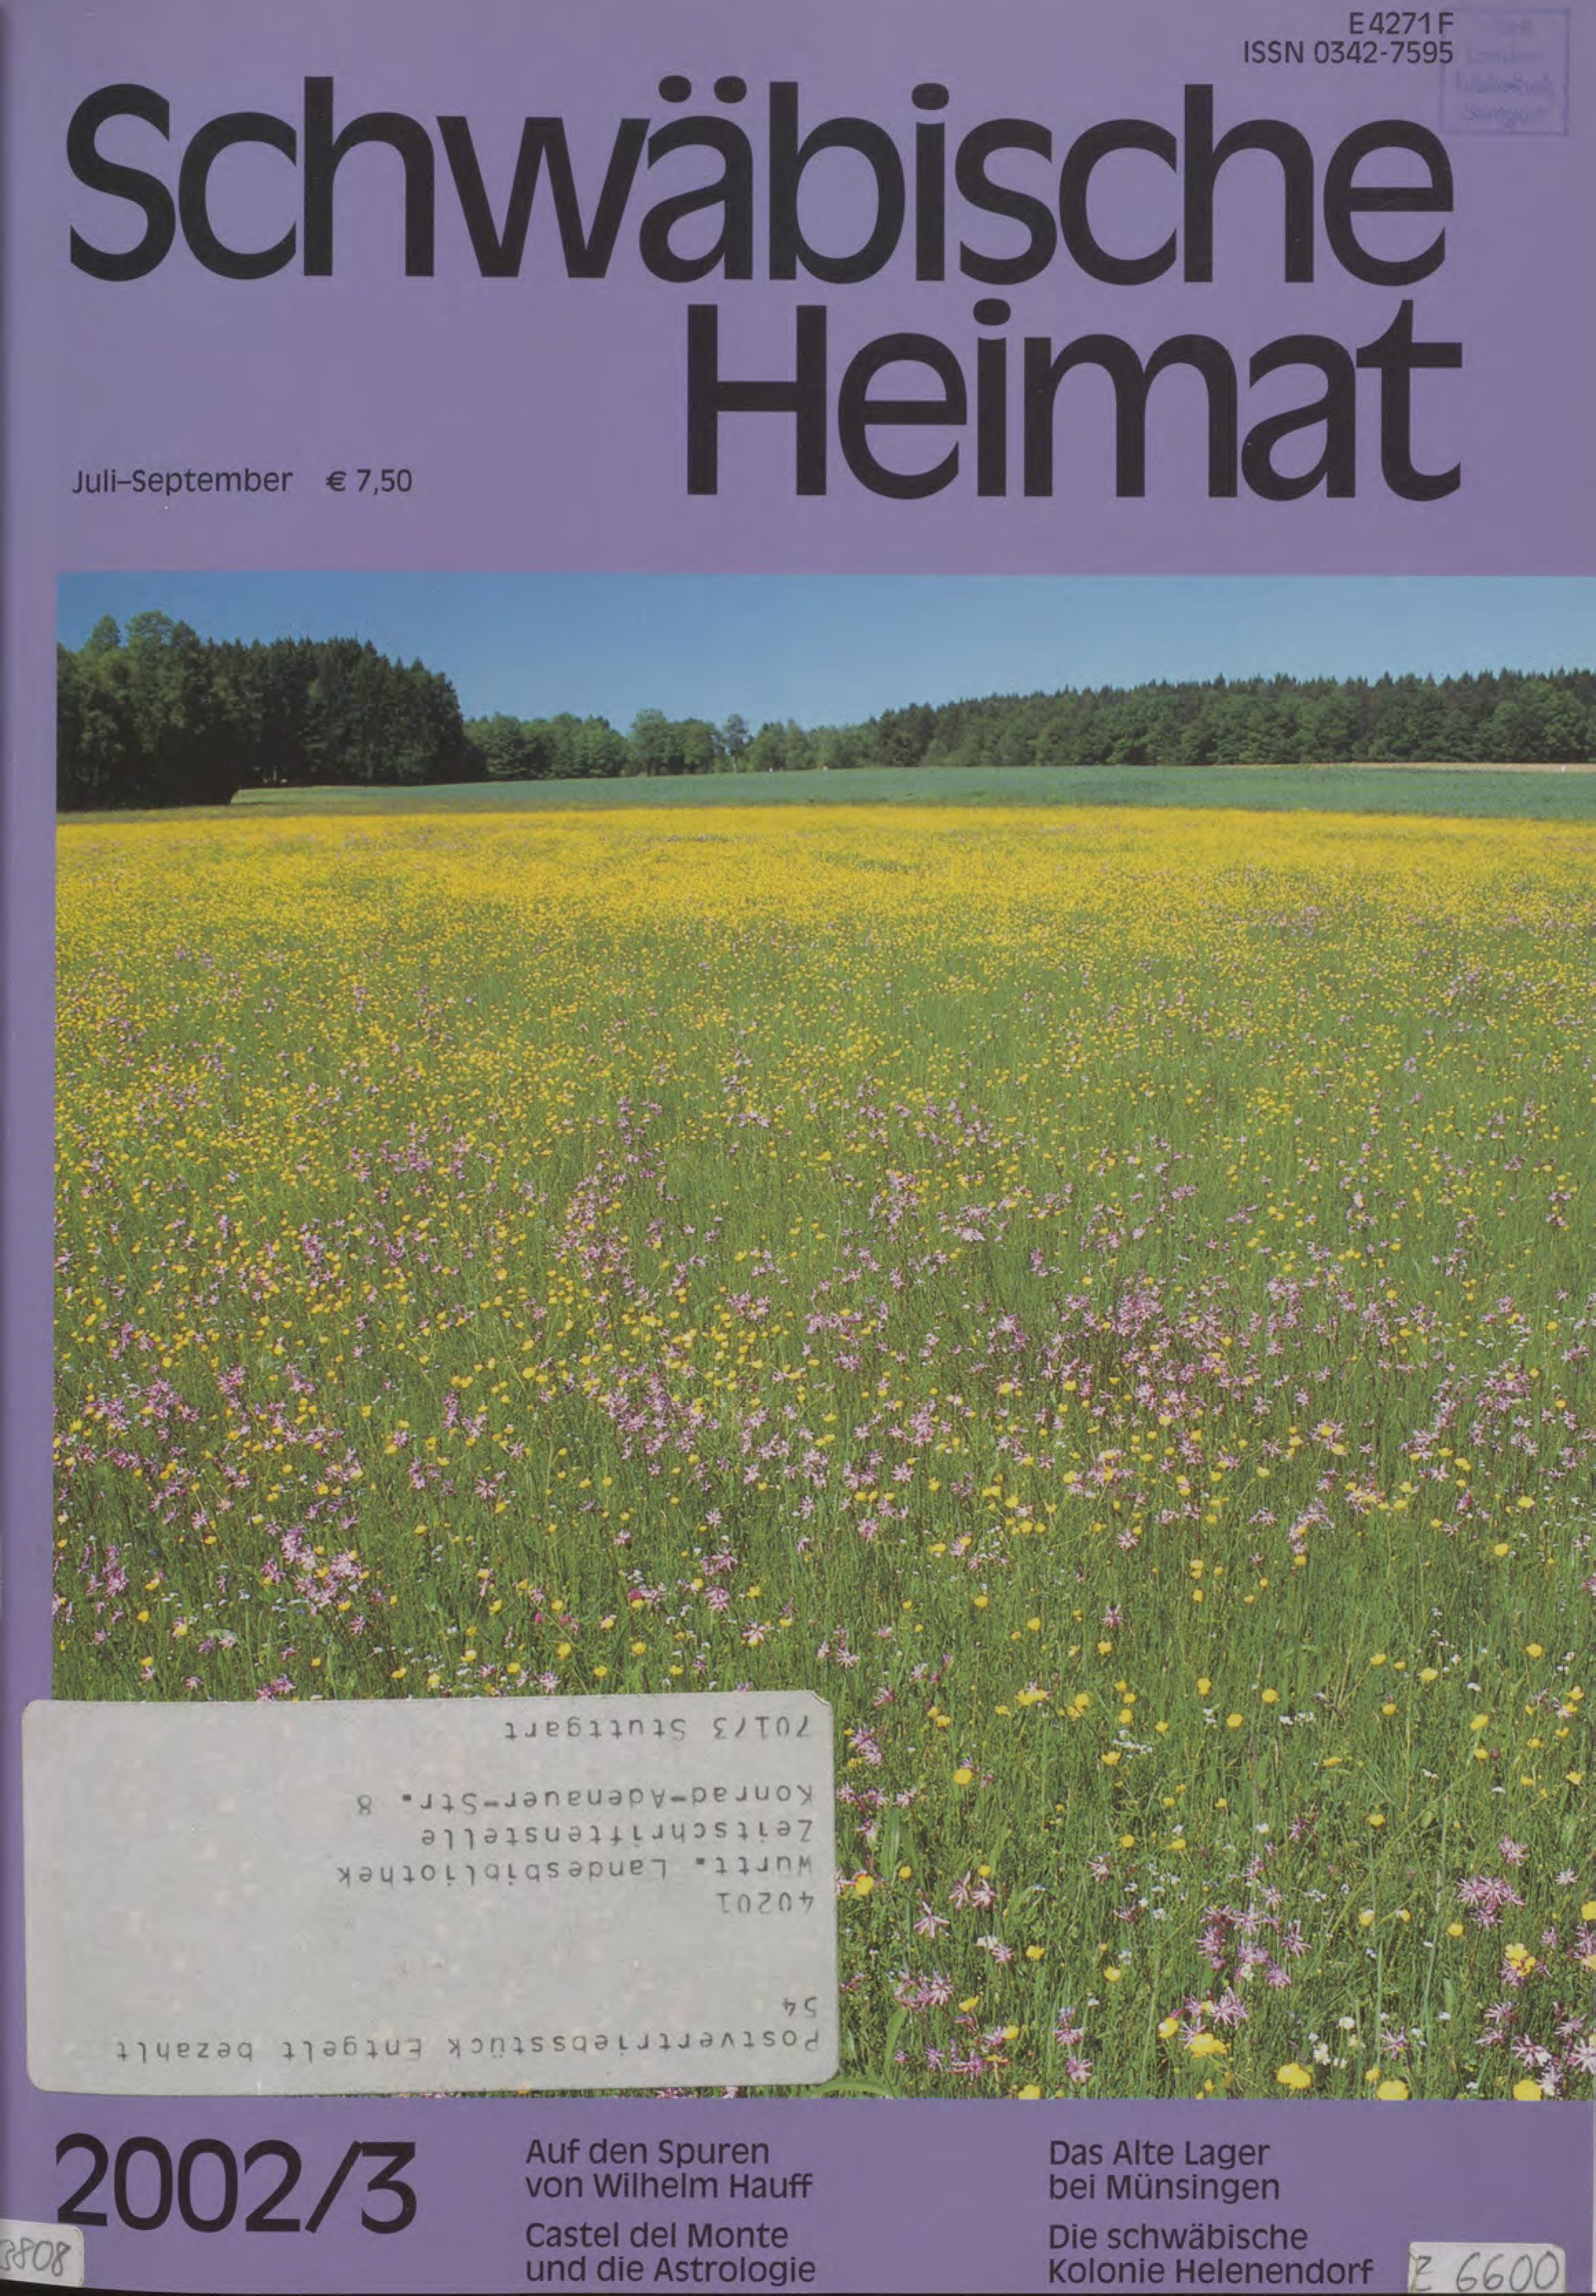                     Ansehen Bd. 53 Nr. 3 (2002): Schwäbische Heimat
                